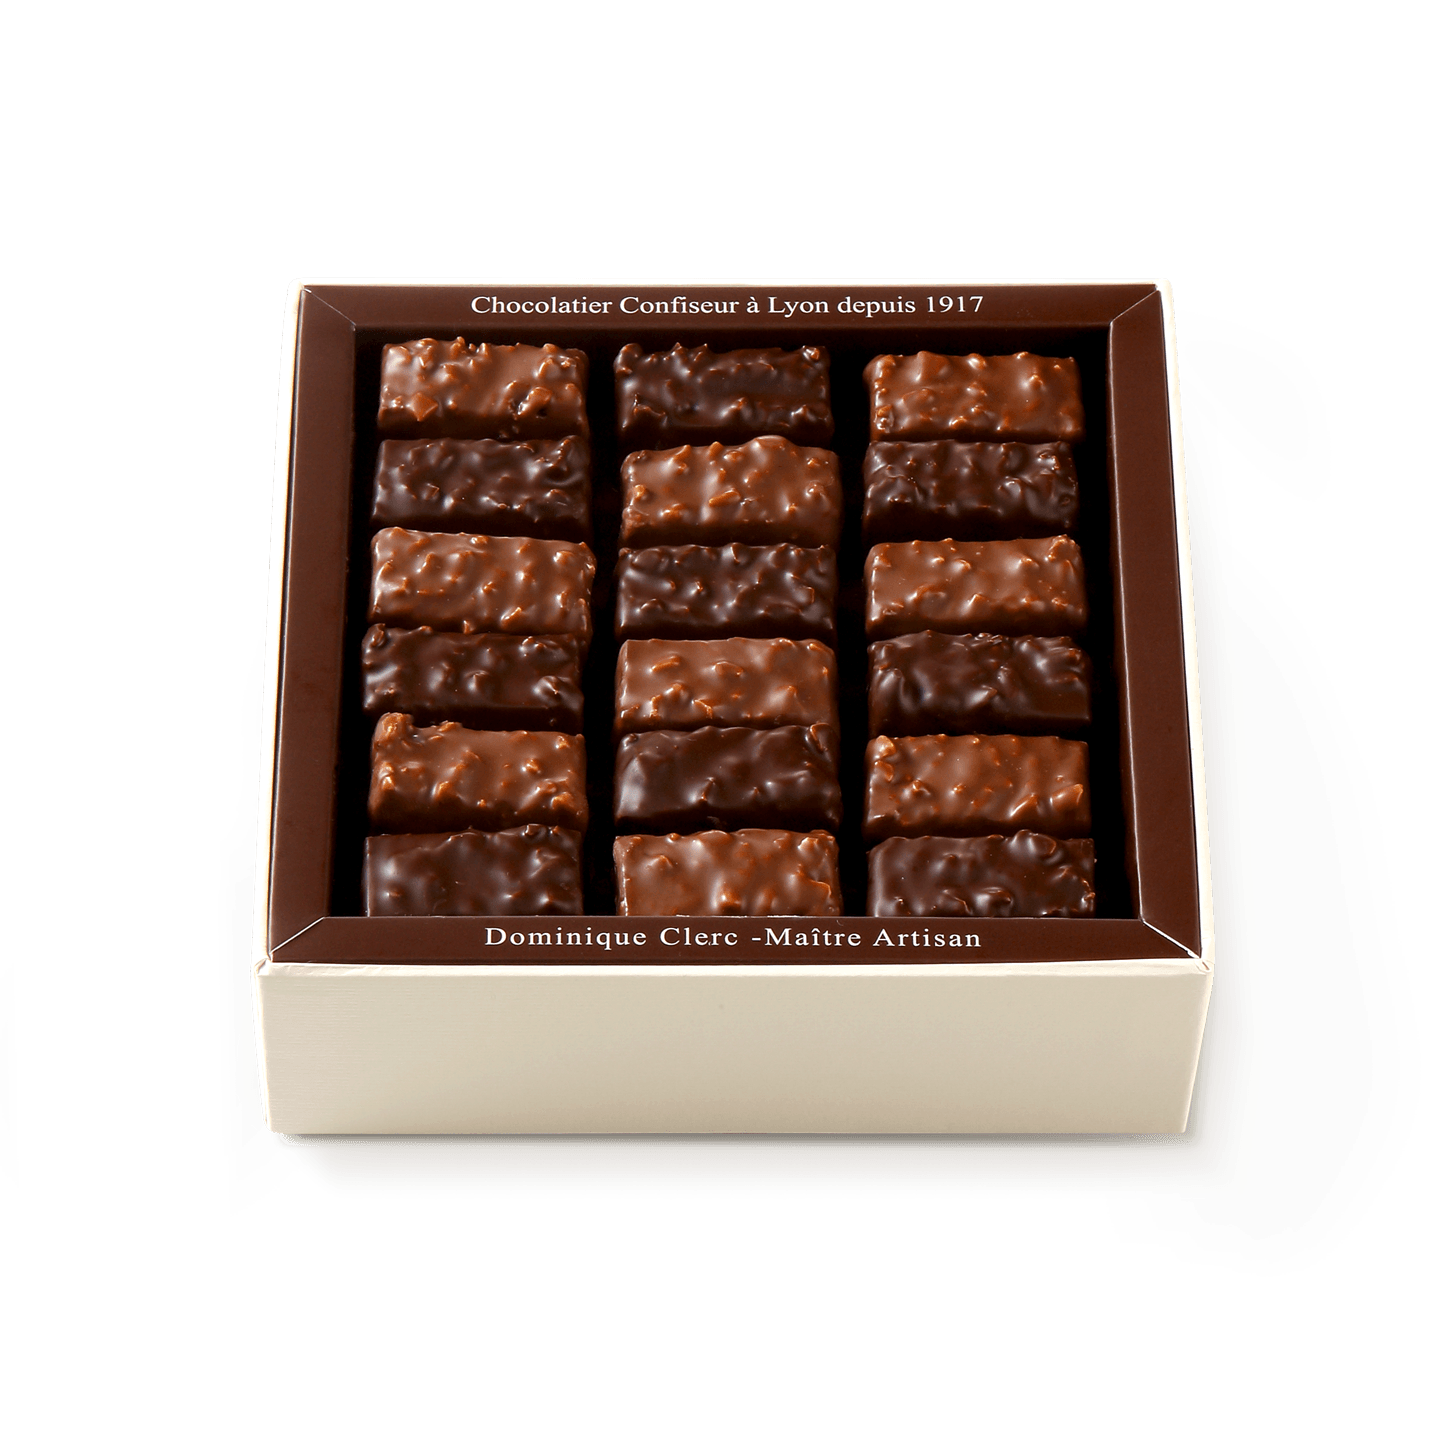 Malakoff 1855 no-sugar dark chocolate